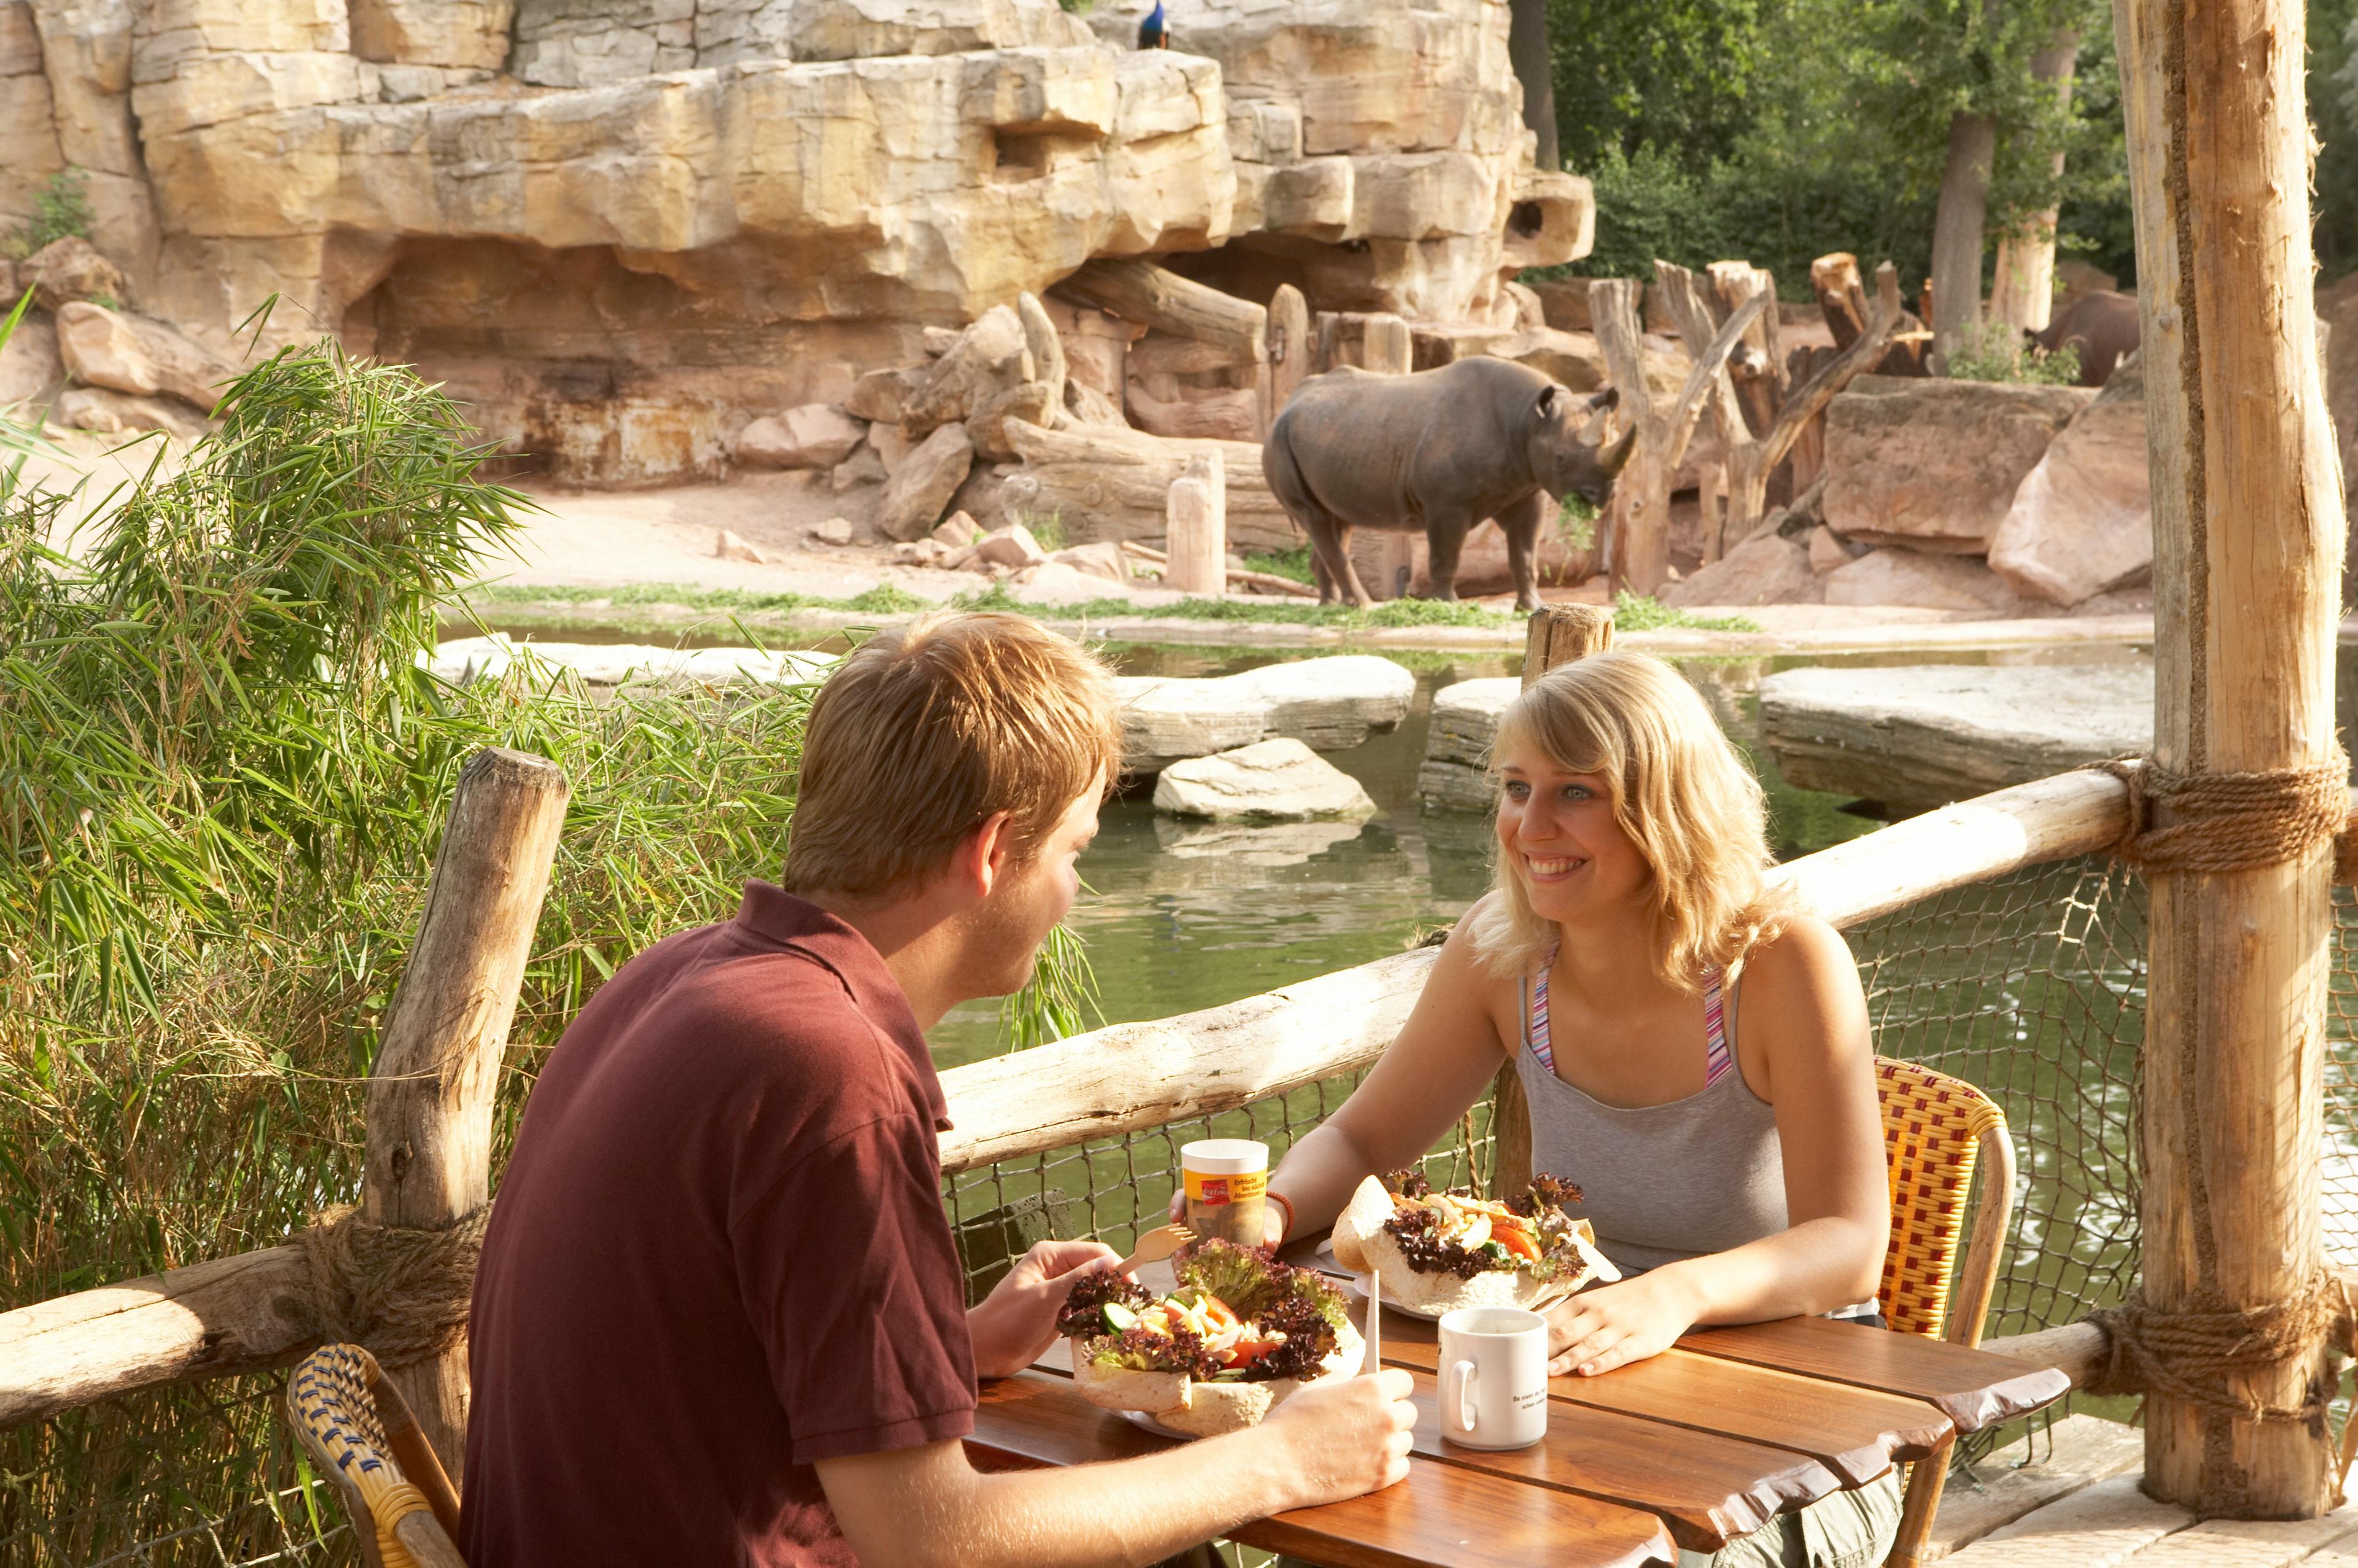 Gäste können am Café Kifaru beim Essen auf die Nashörner schauen